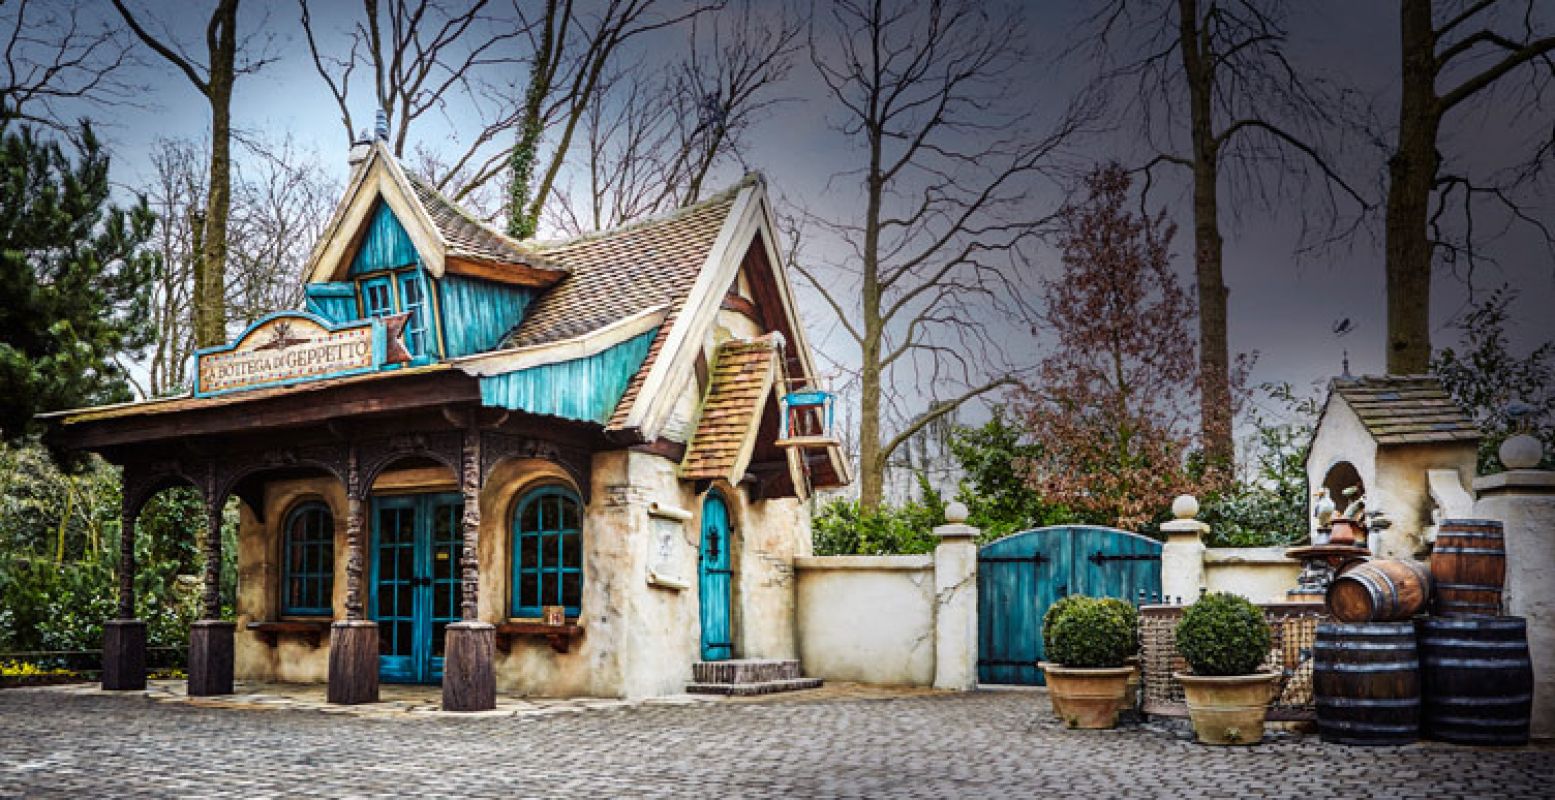 De werkplaats van Geppetto. Foto: Efteling